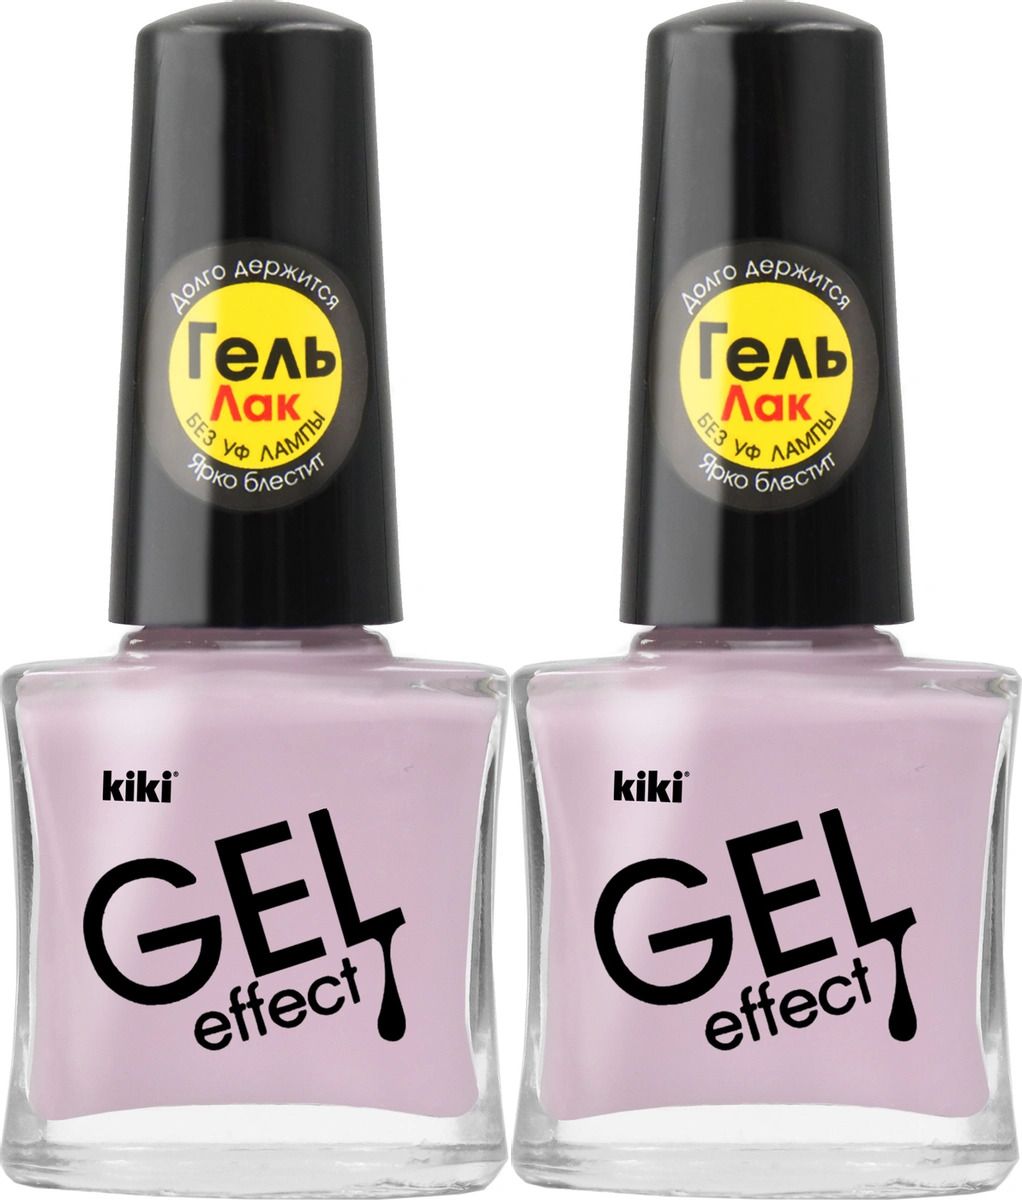 Лак для ногтей Kiki Гель эффект 080 Бледно-розовый, 2 шт